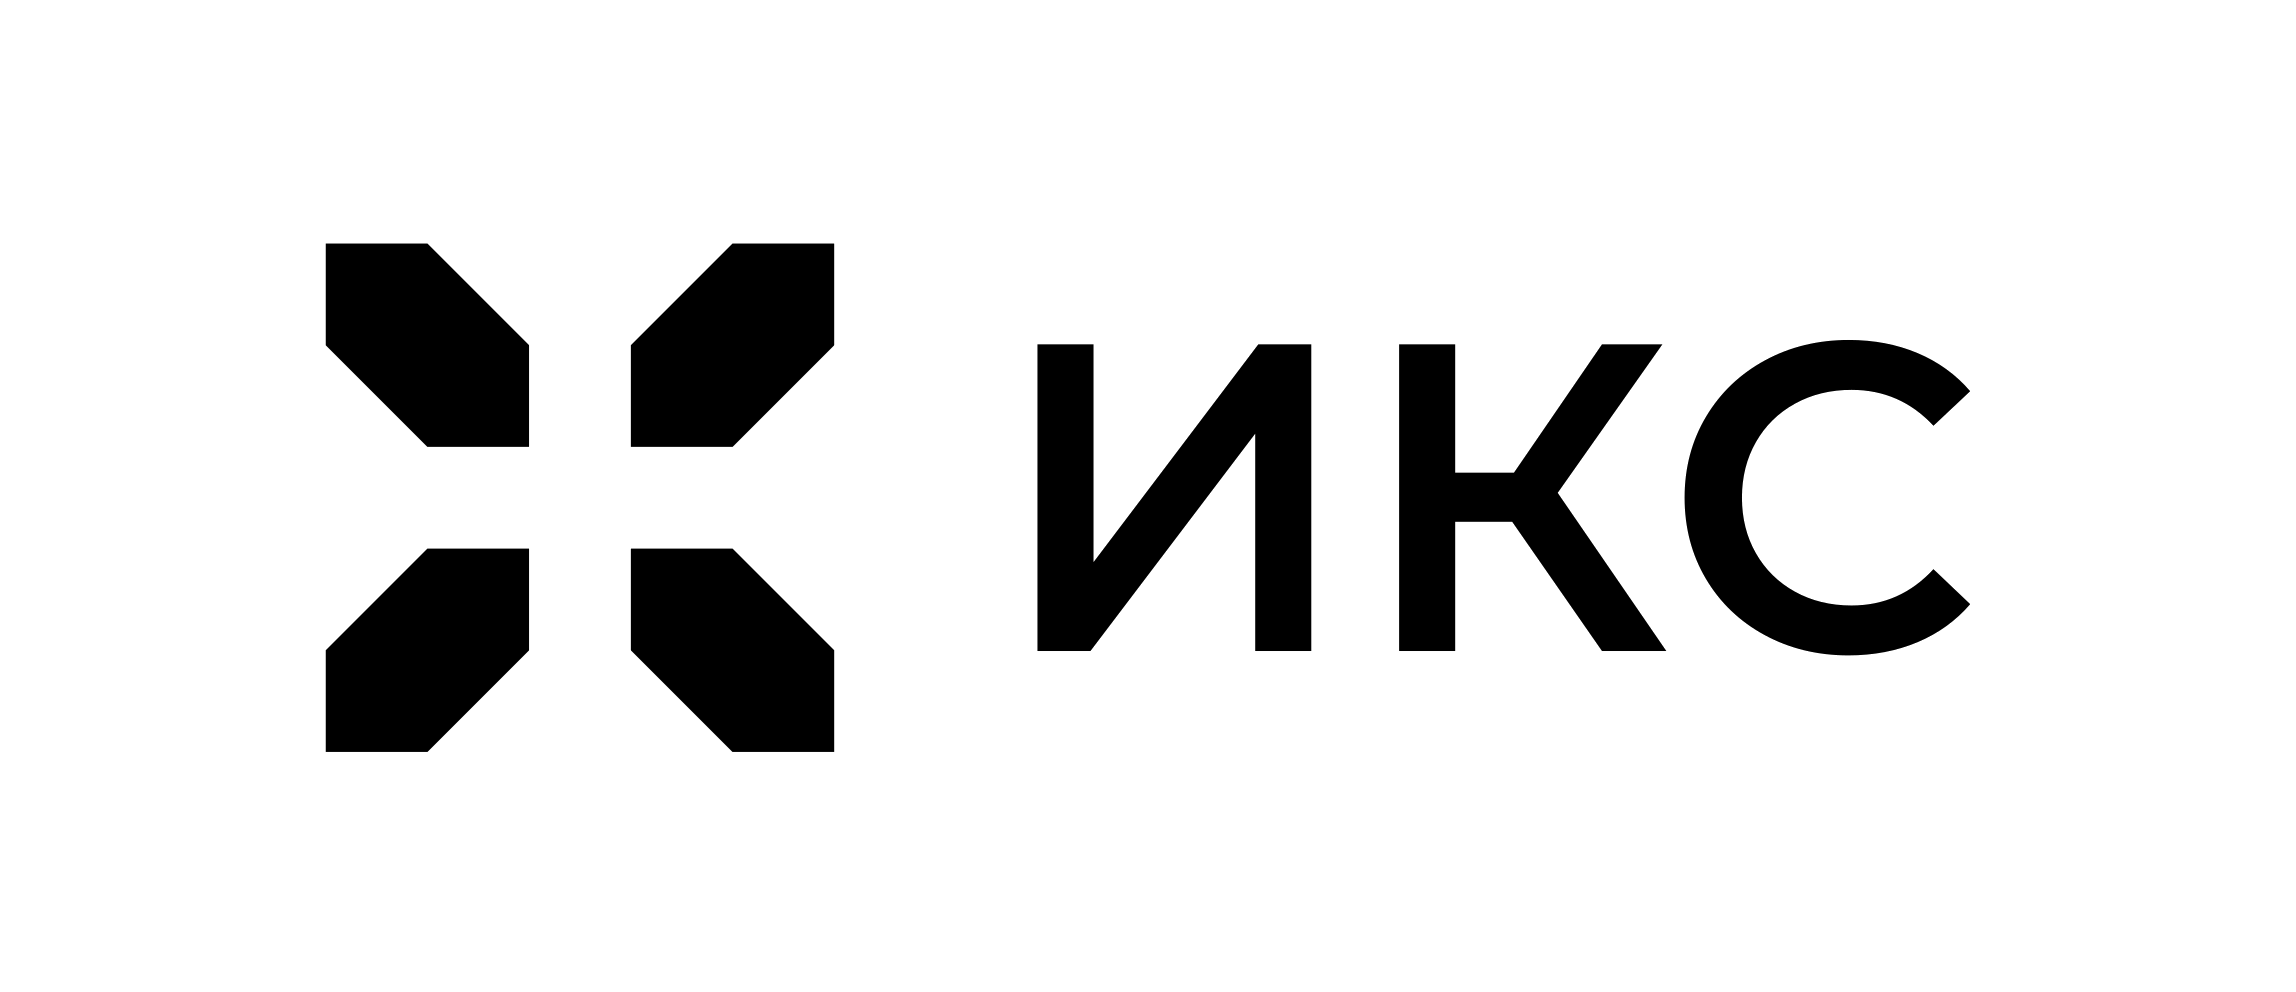 Logo_ICS-02.png